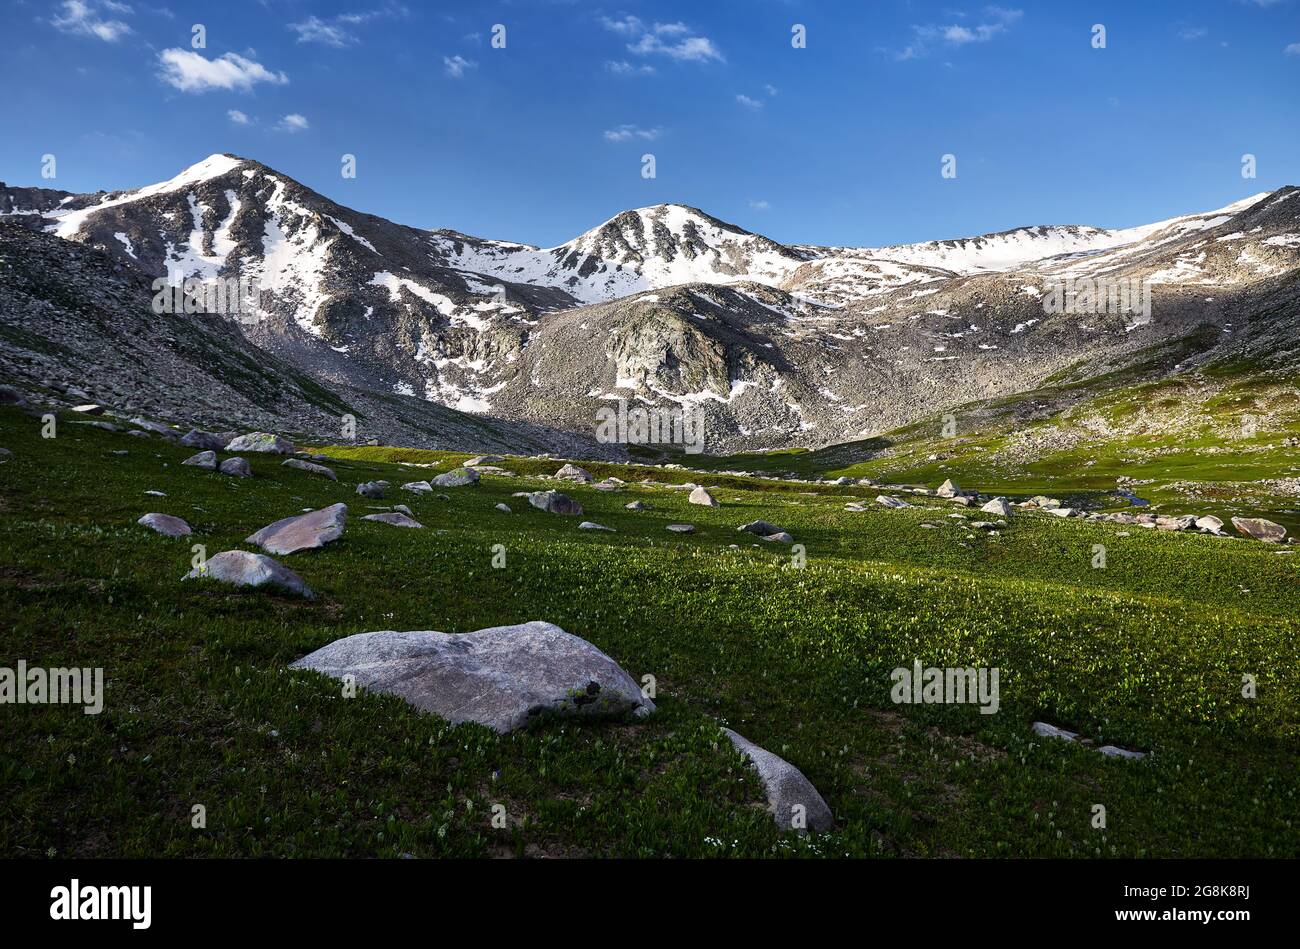 Splendido scenario della valle montana con la cima della neve e prato verde in primo piano. Concetto esterno ed escursionistico Foto Stock